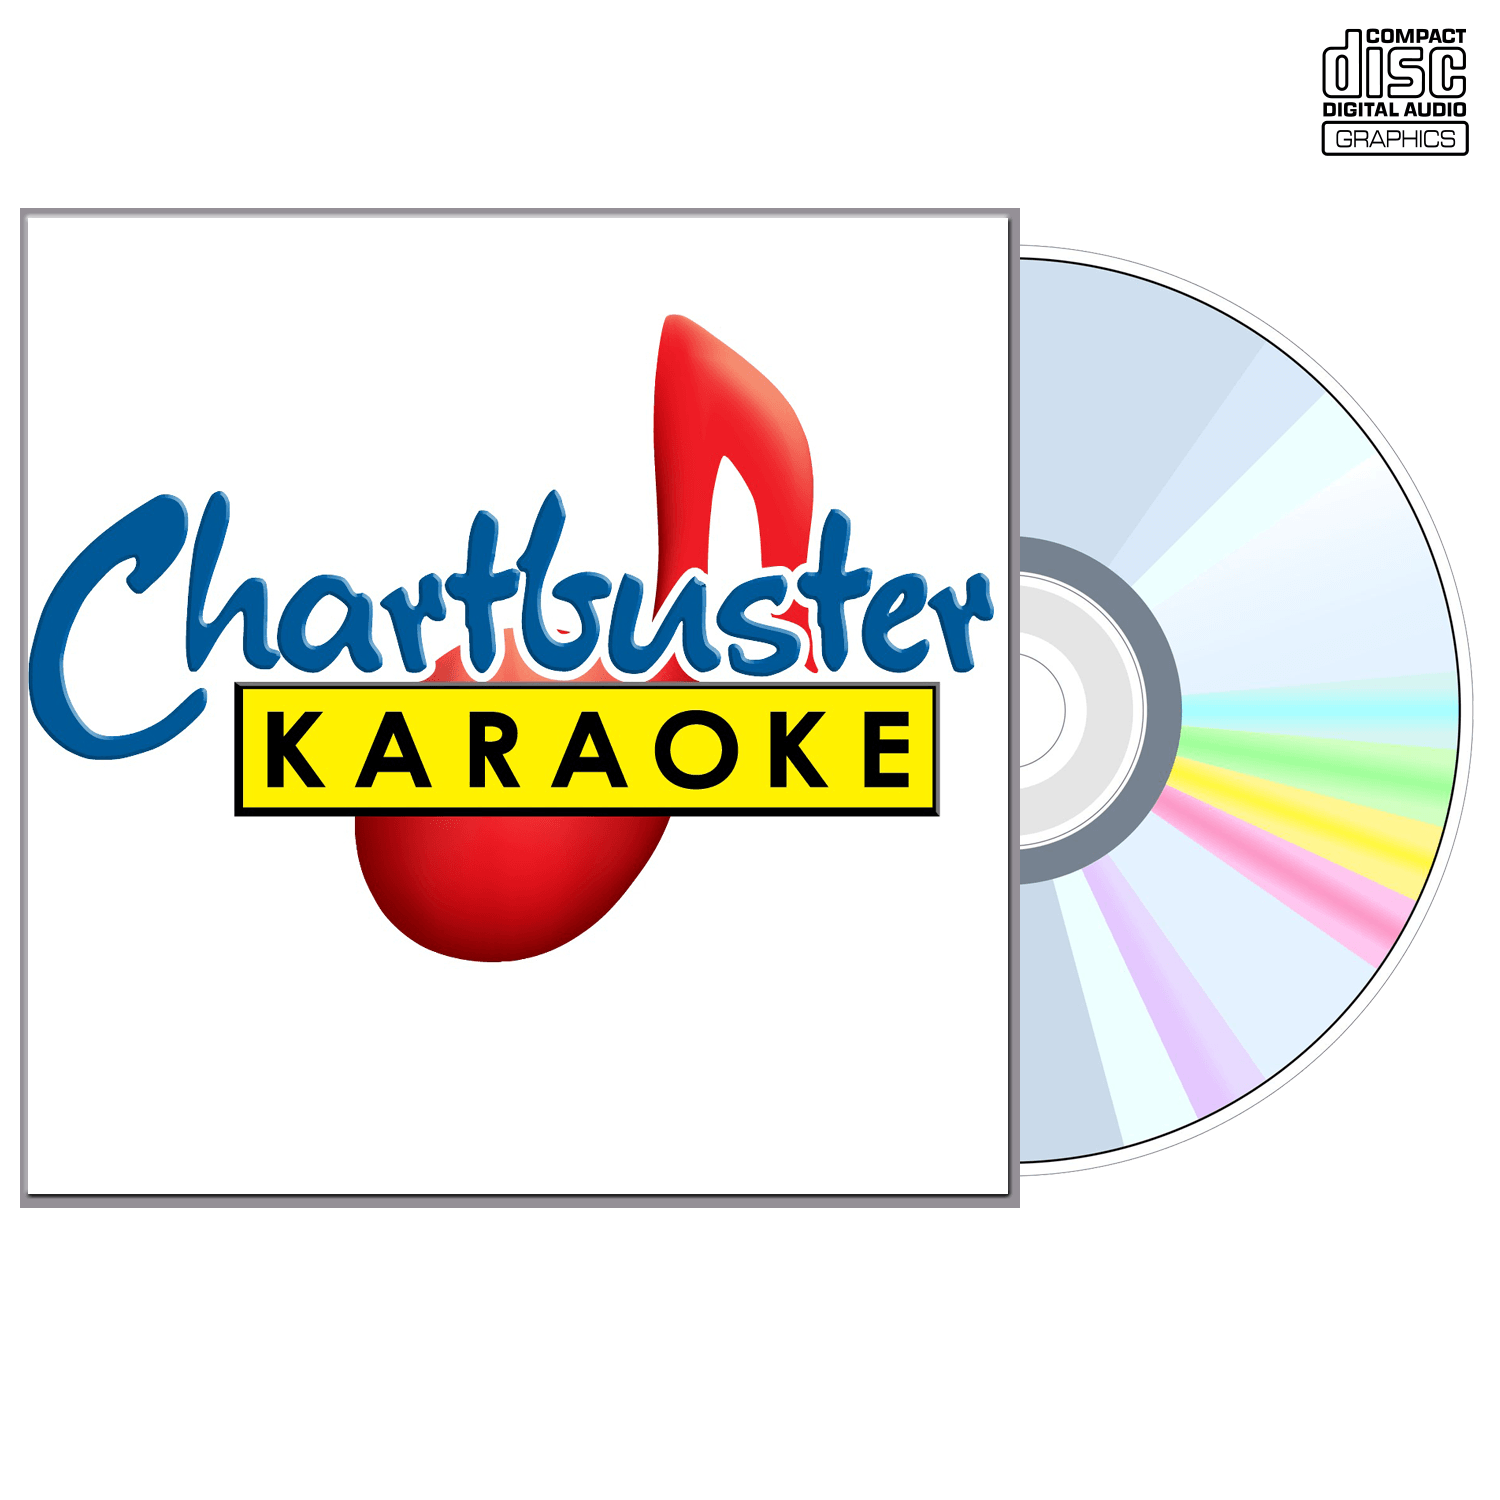 The O Jays - CD+G - Chartbuster Karaoke - Karaoke Home Entertainment